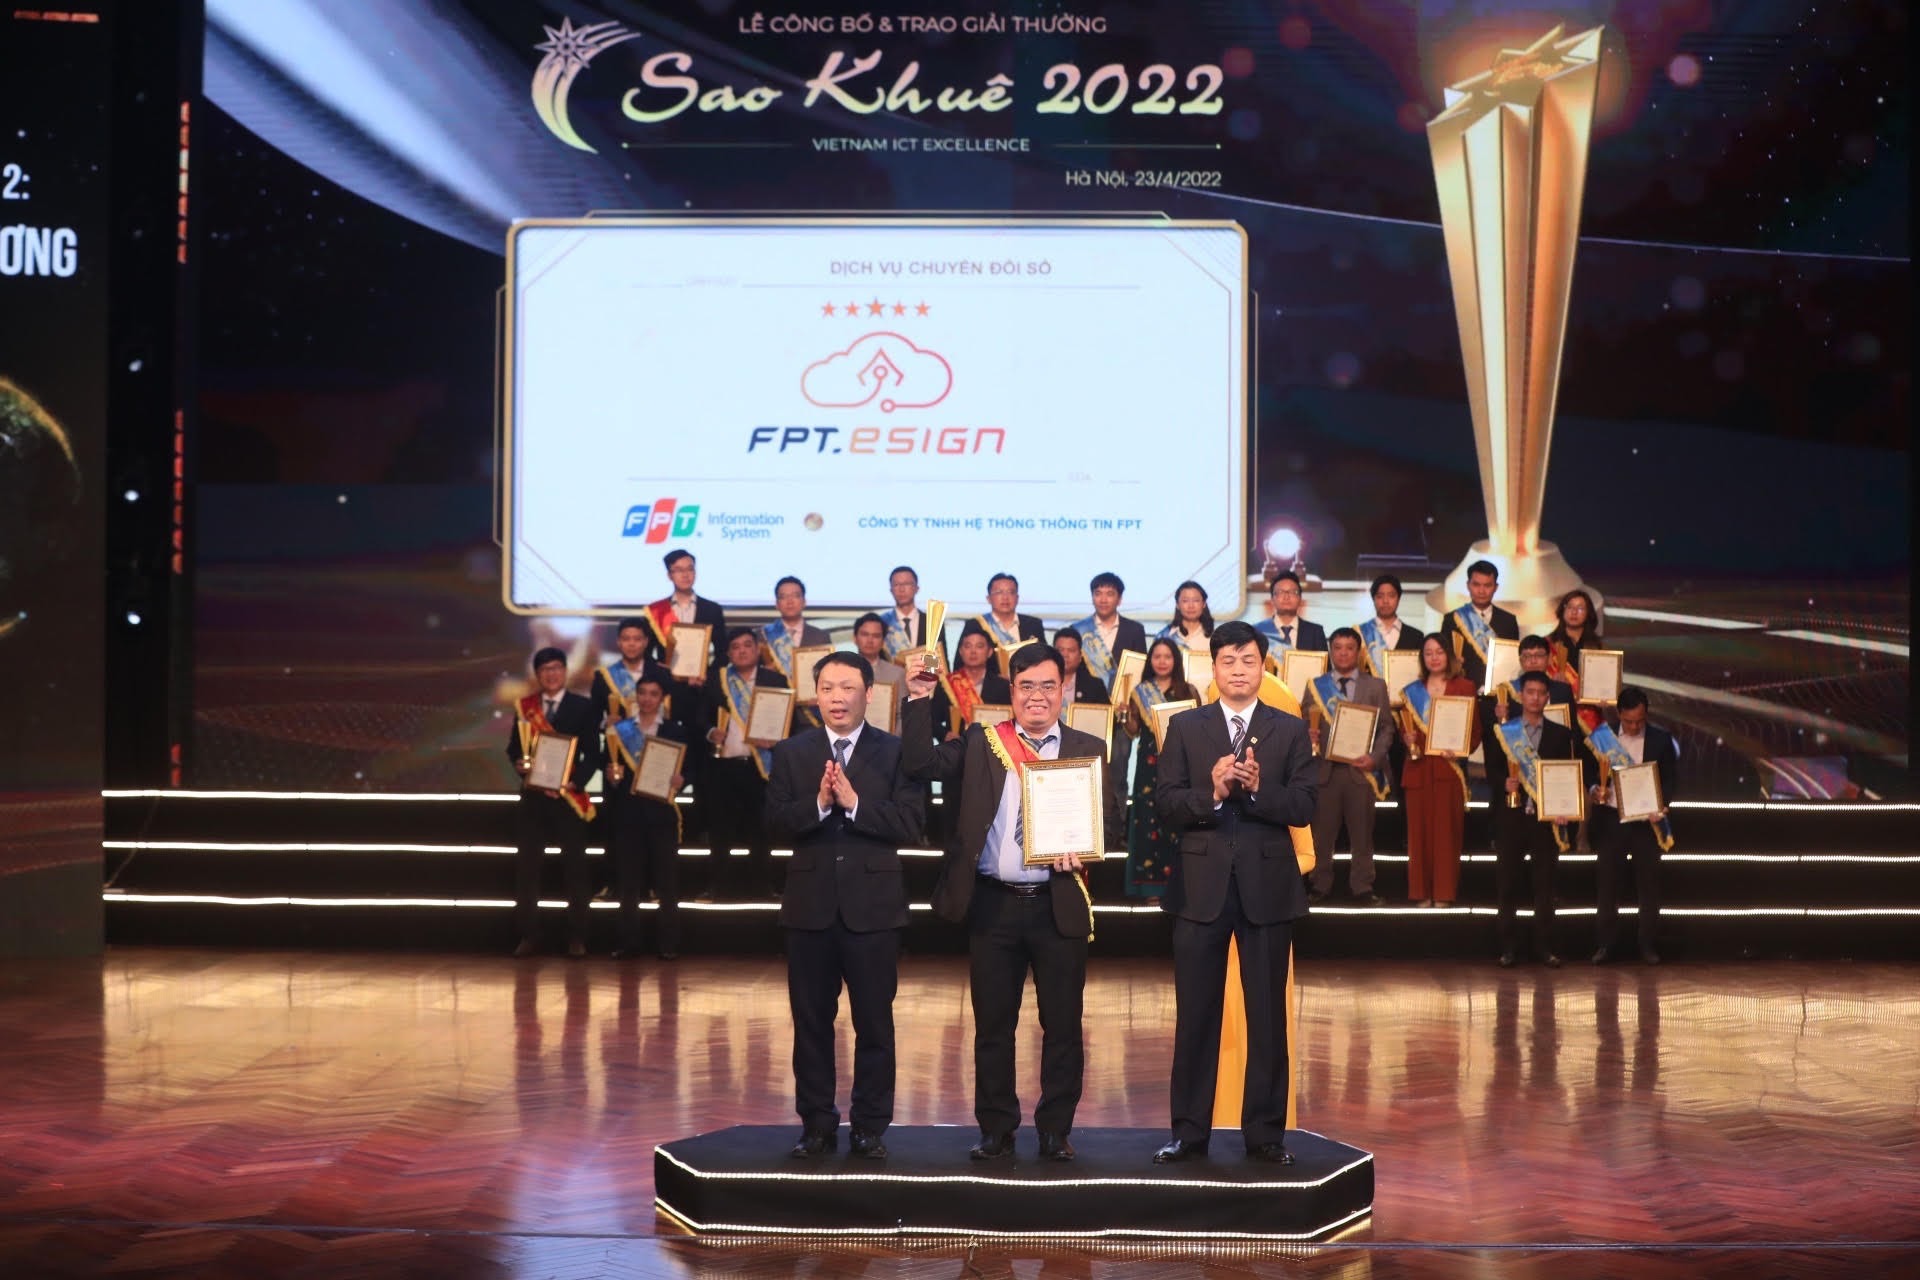 FPT dẫn dắt chuyển đổi số với loạt sản phẩm công nghệ đạt giải Sao Khuê 2022 - Ảnh 1.